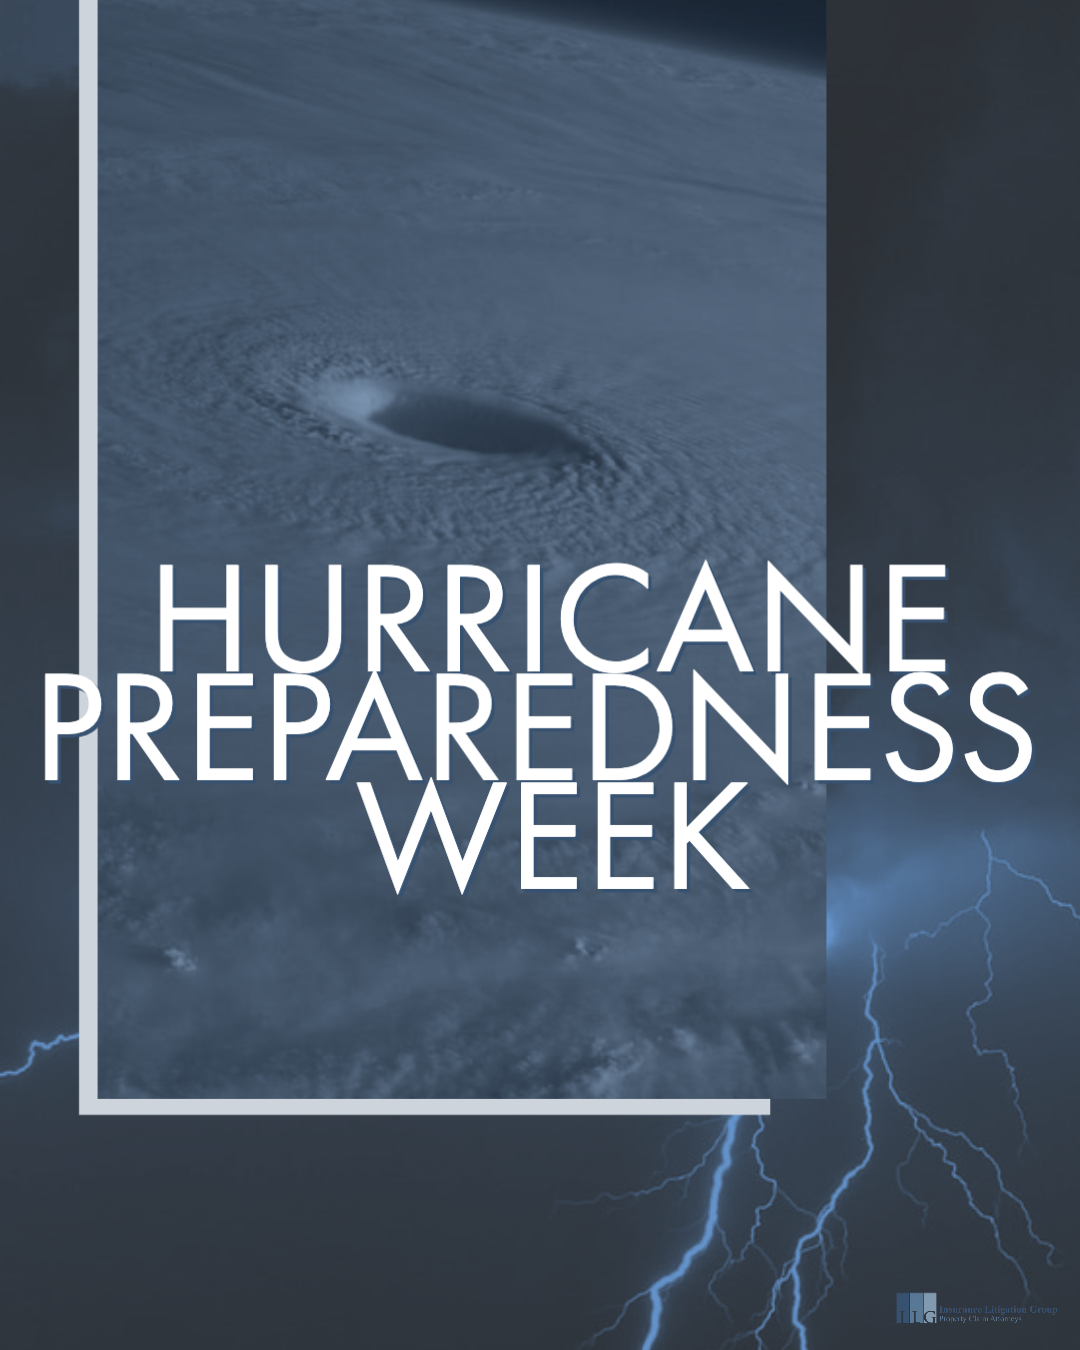 Hurricane Preparedness Week 2020: Be Ready for Hurricane Season